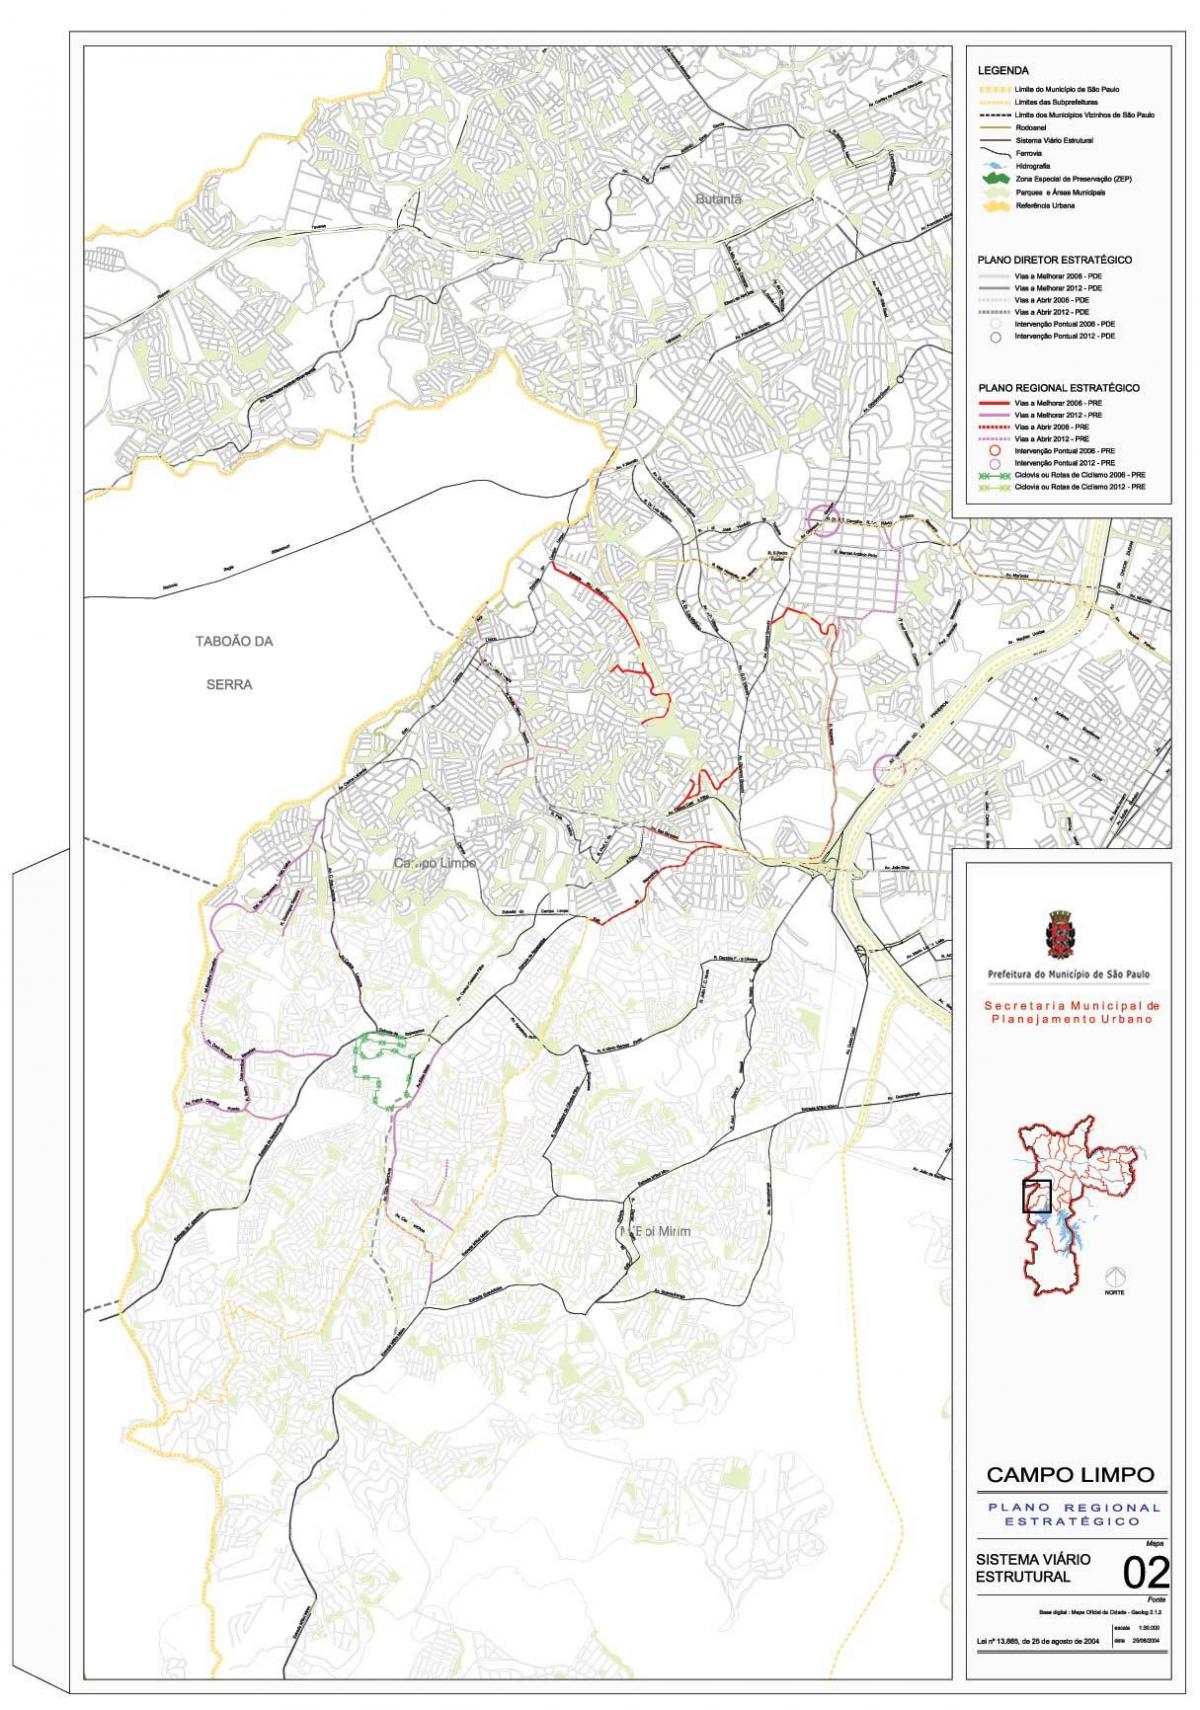 नक्शे के कॅंपो लिम्पो साओ पाउलो - सड़कों